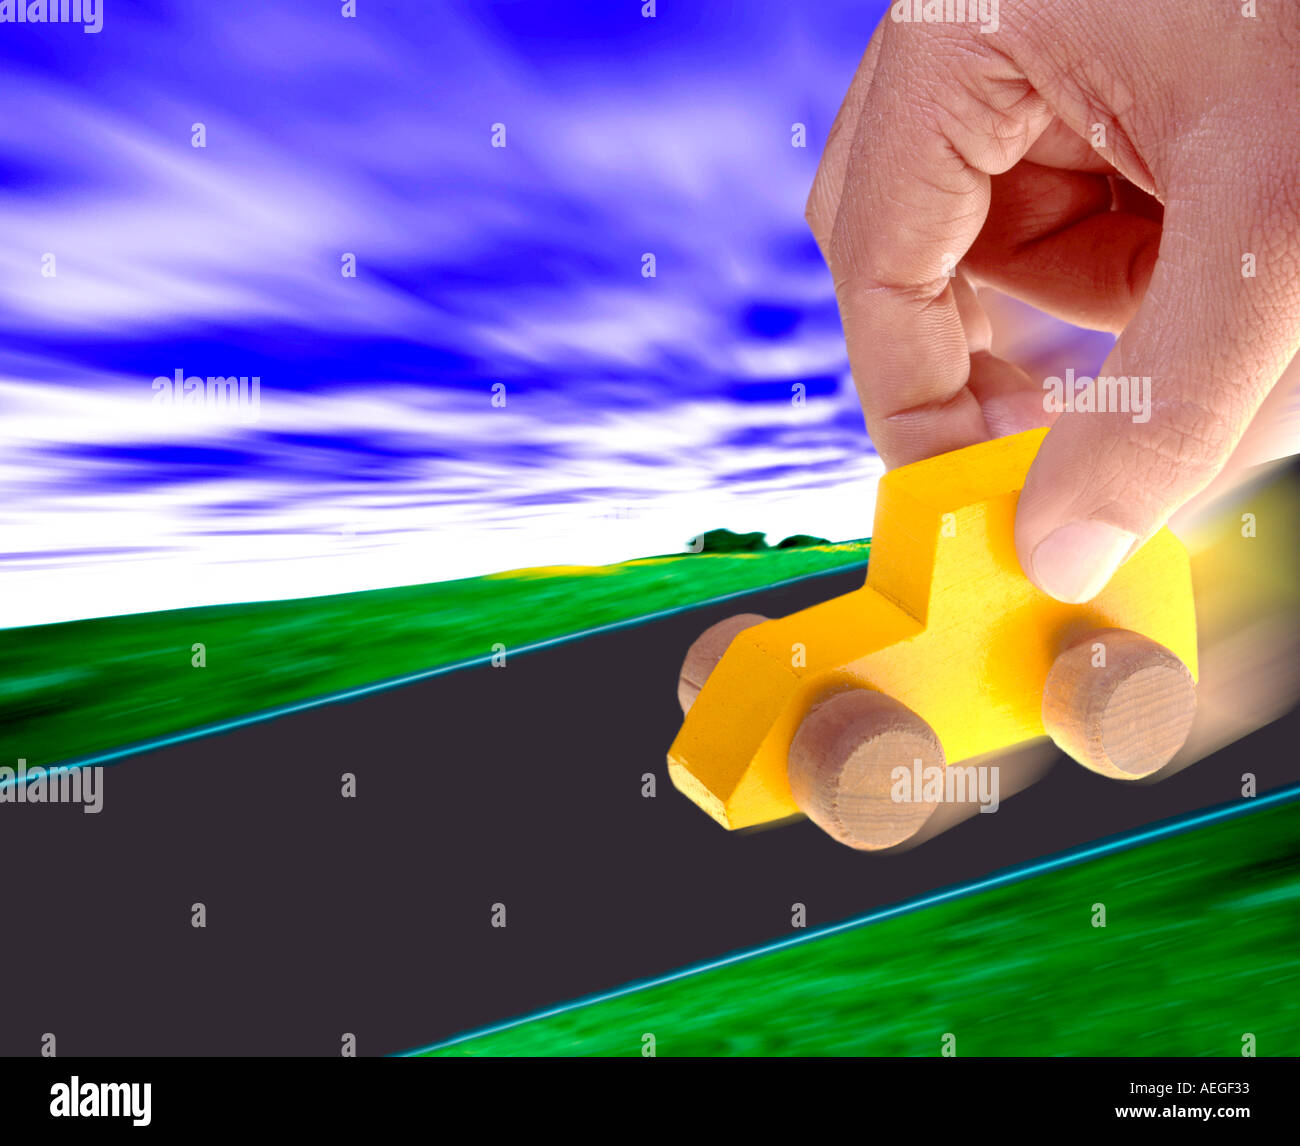 Ufficio trascinando a mano in legno di manipolazione auto play prospettiva giocattolo varie texture di sfondo direzione concettuale Foto Stock